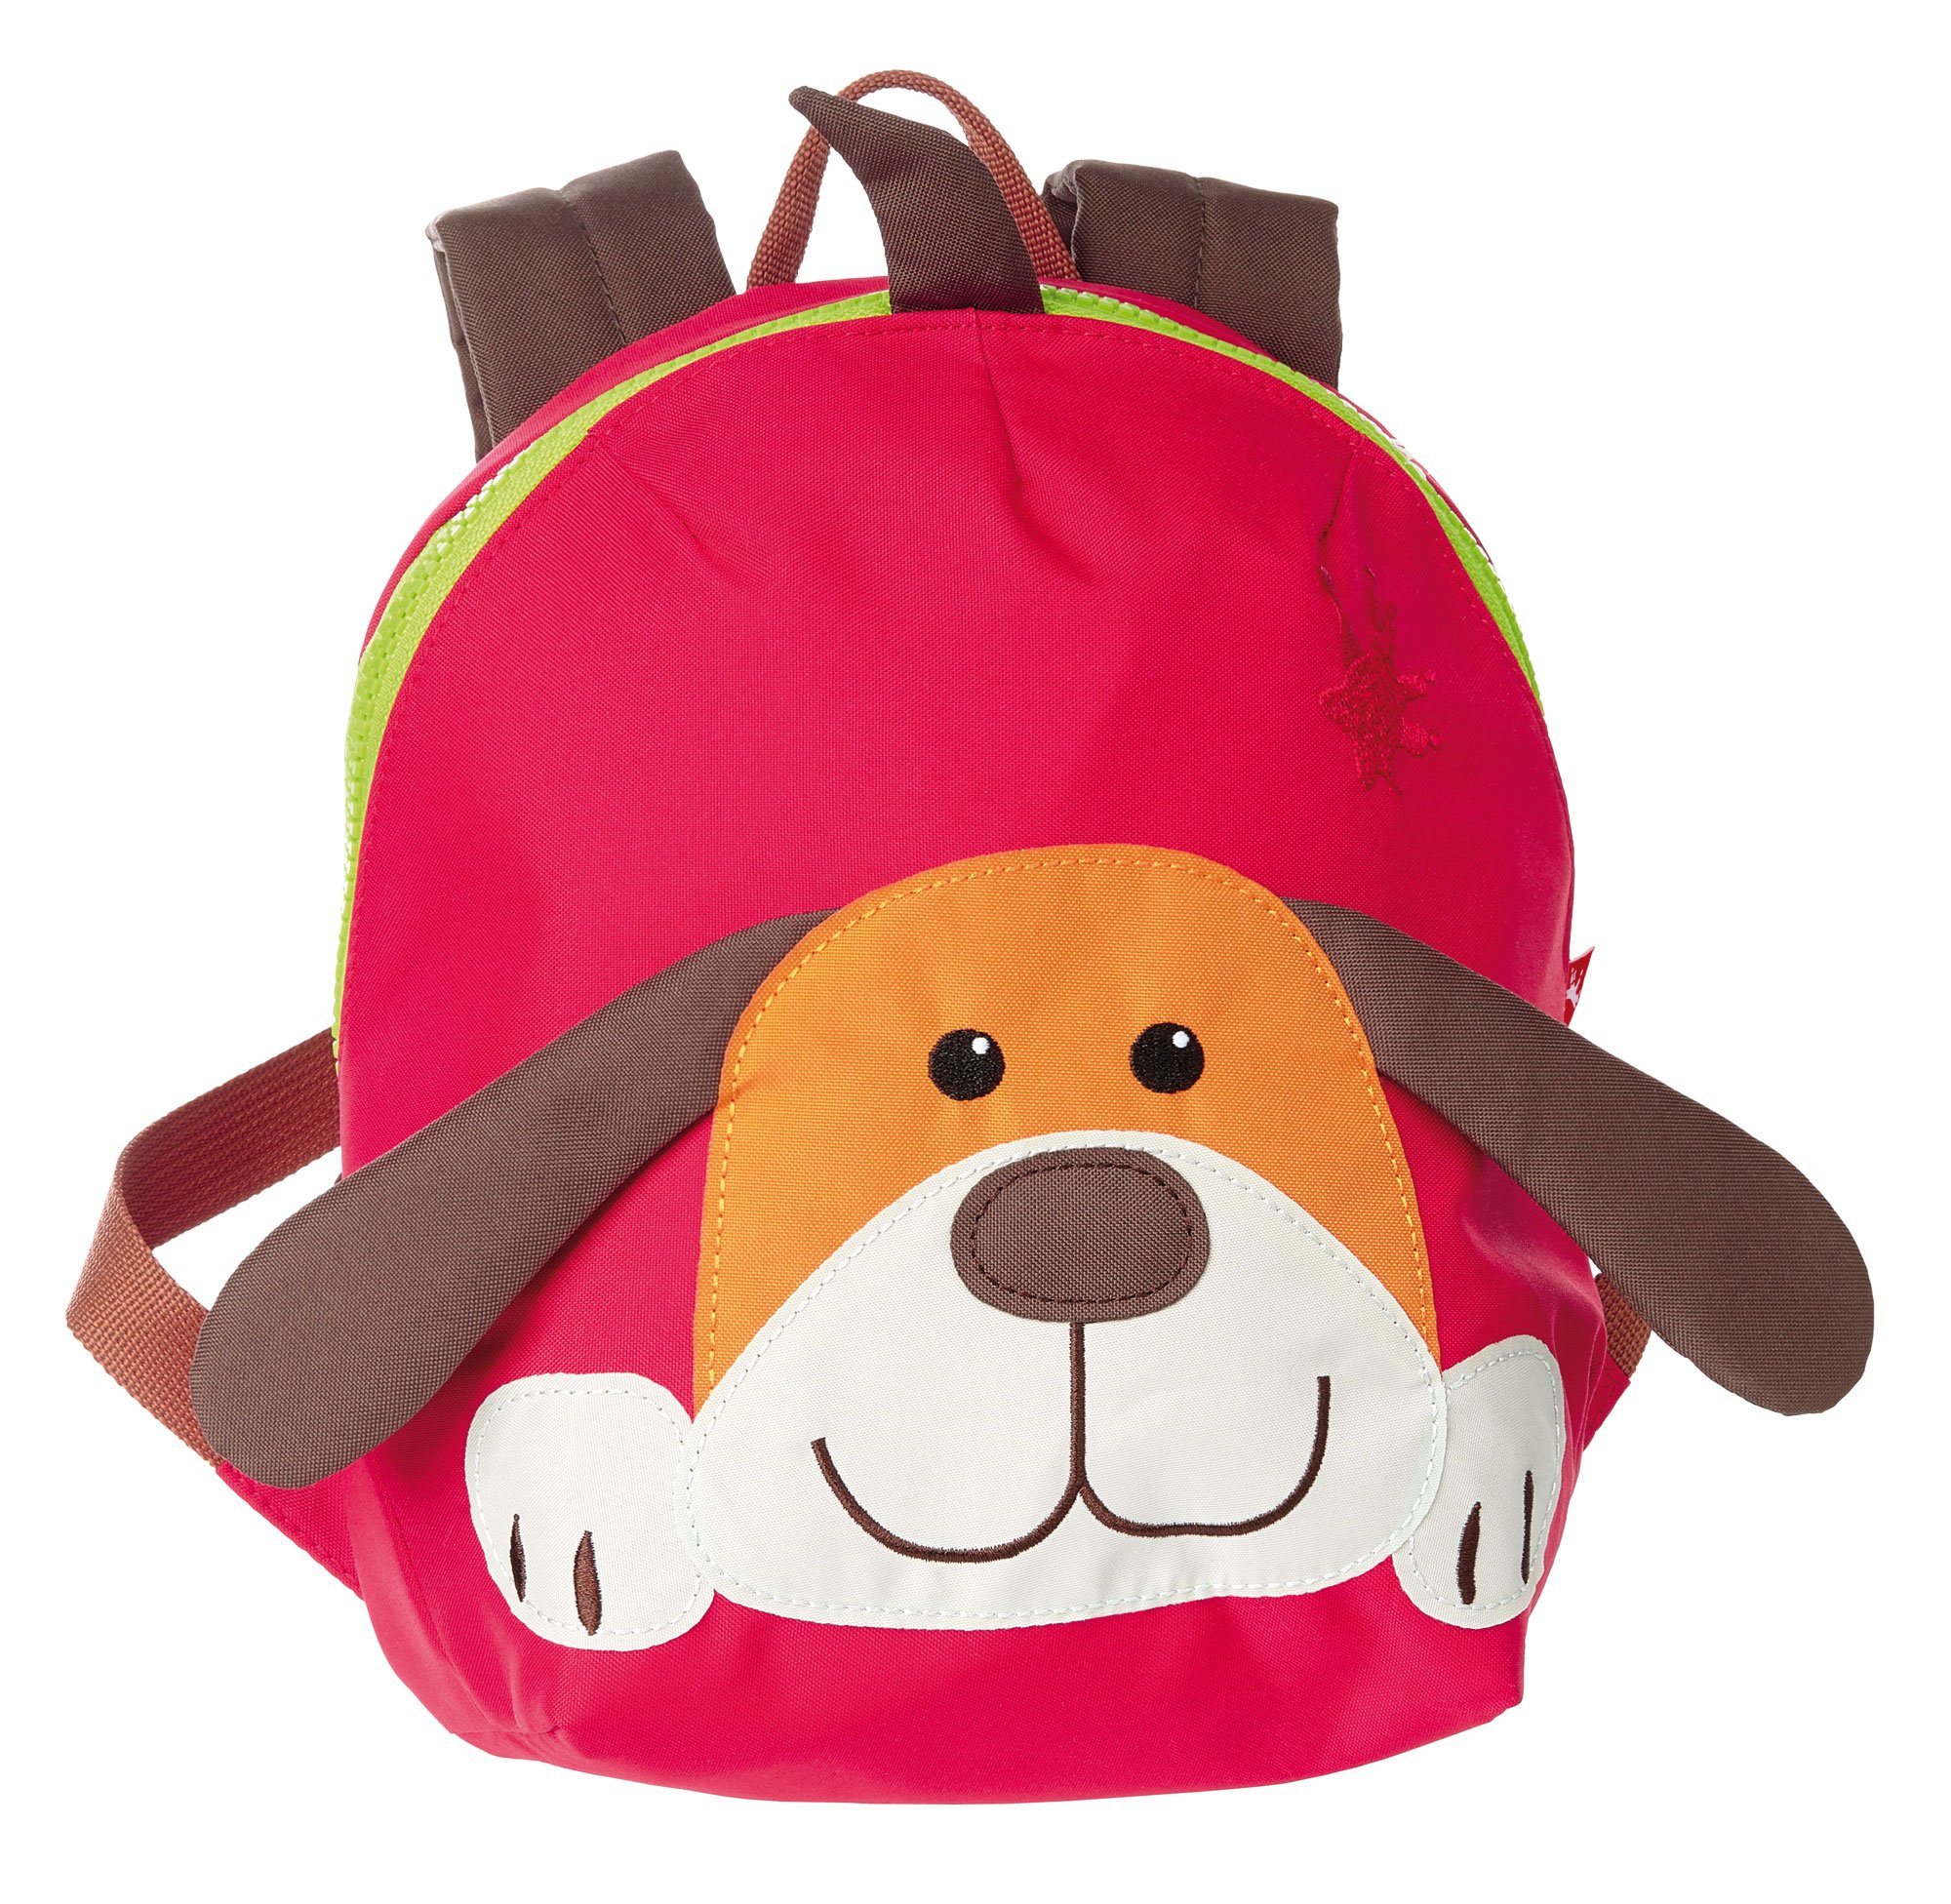 SIGIKID 24219 Mini Rucksack Hund Kinderrucksack für Krippe, Kita, Ausflüge empfohlen für Mädchen und Jungen ab 2 Jahren, Rot/Braun 26 cm